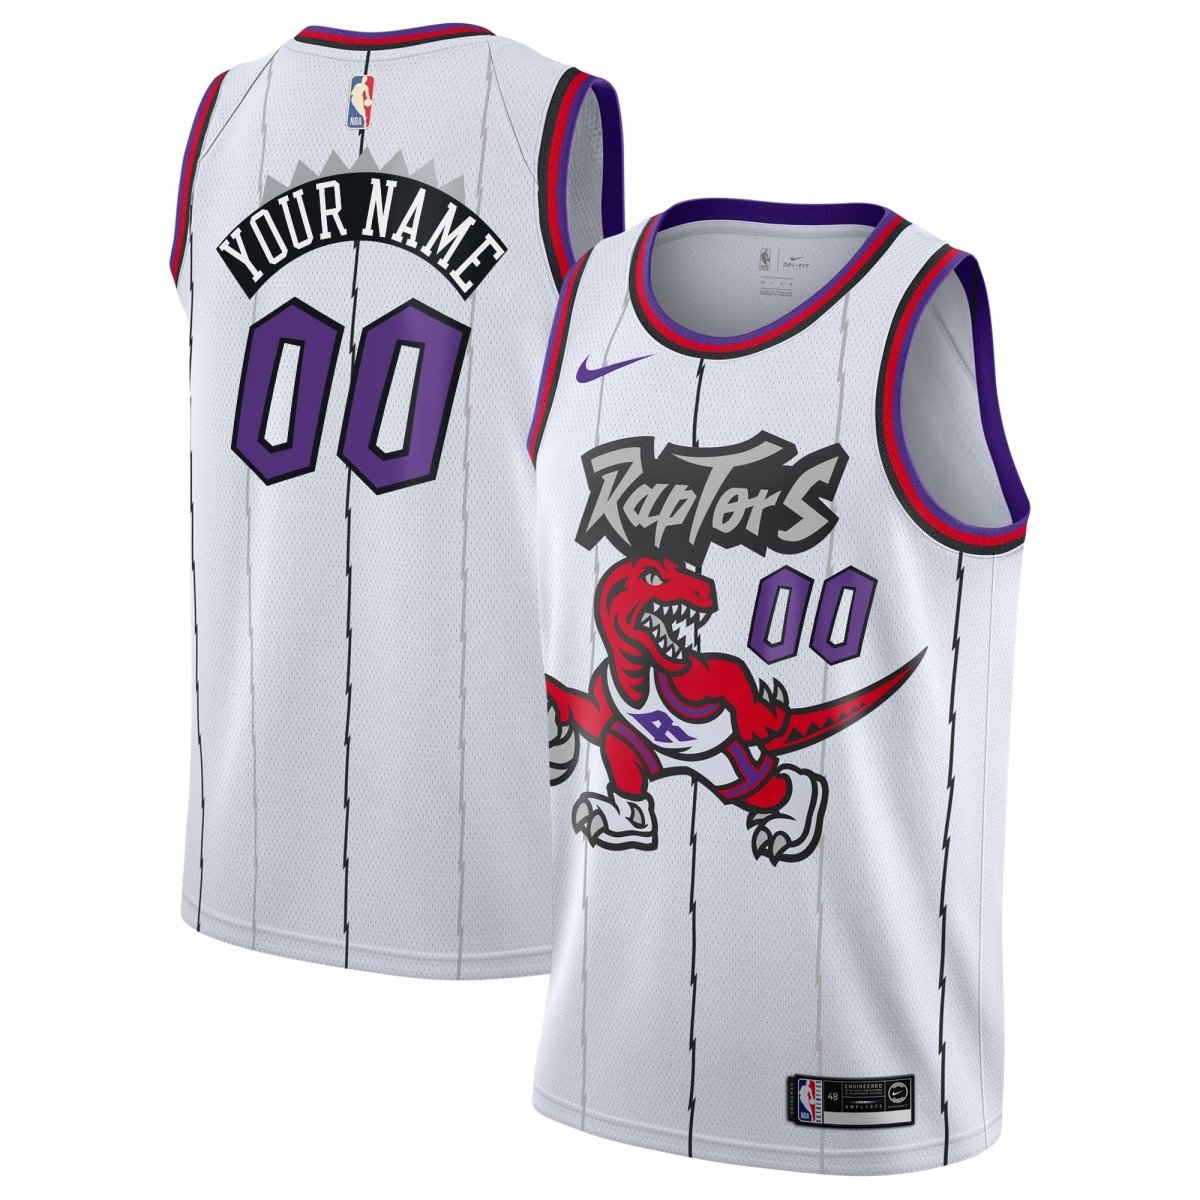 Toronto Raptors Jerseys & Teamwear, NBA Merchandise